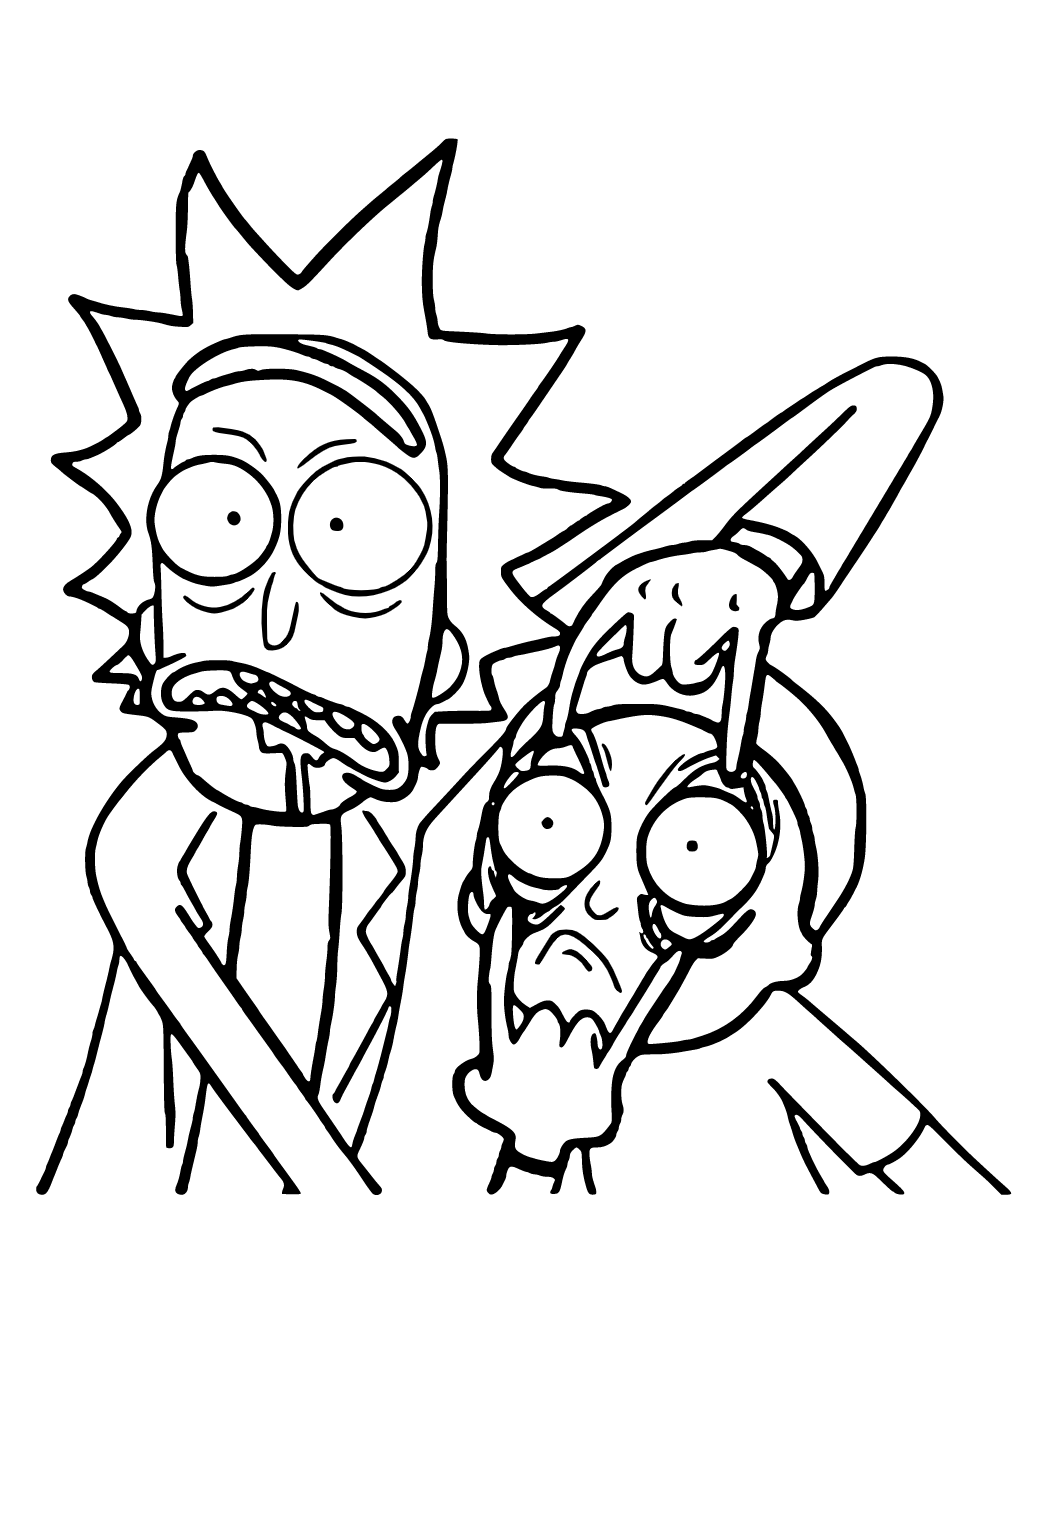 Rick dan Morty